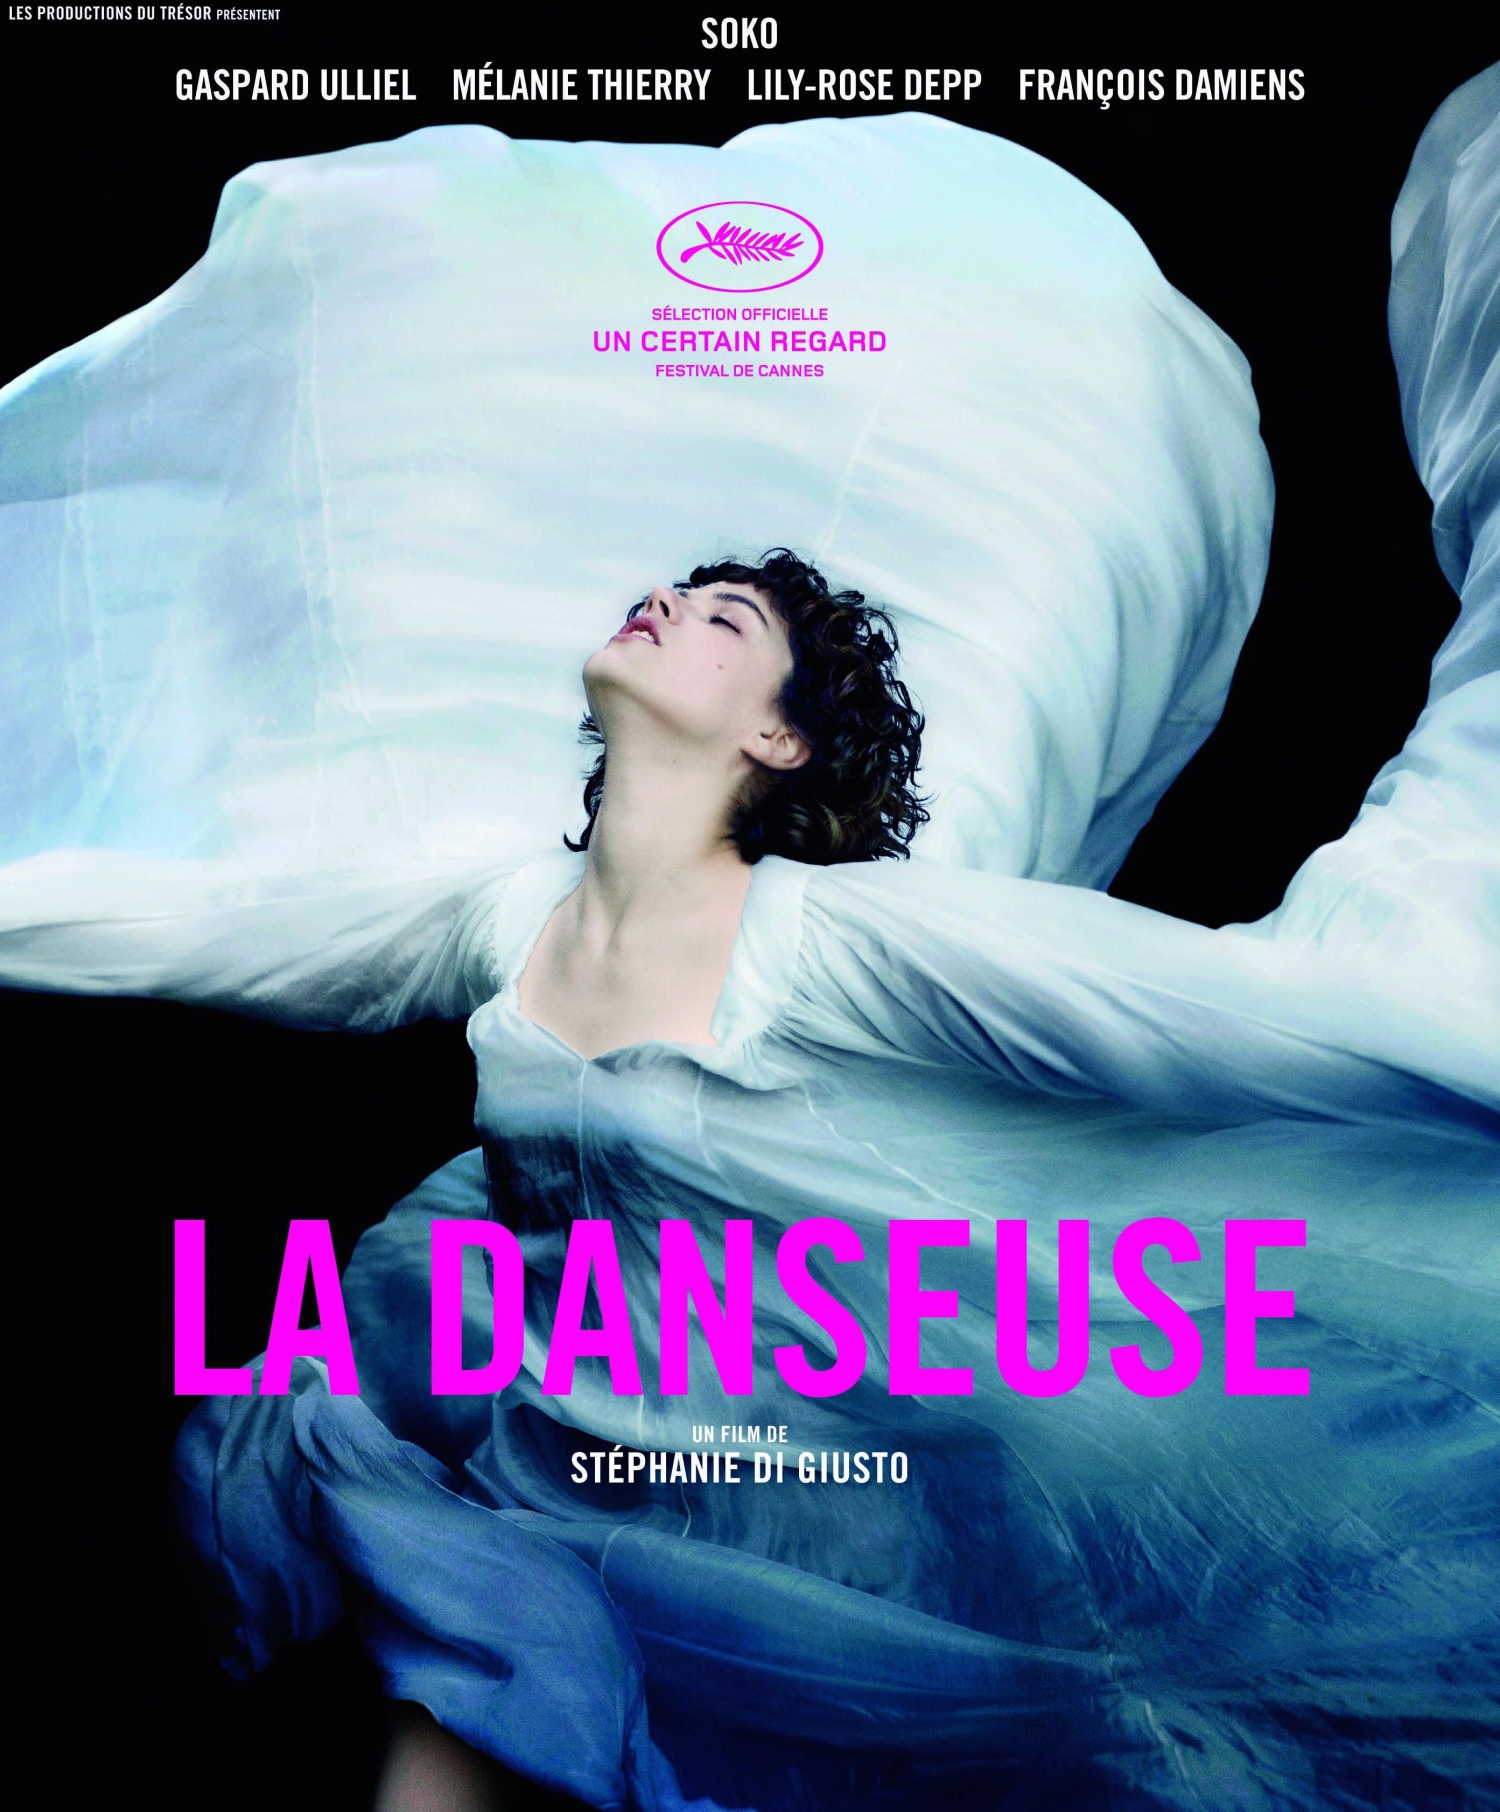 La danseuse e1463172345534 Festival de Cannes (Un certain regard): Critique de "La danseuse"